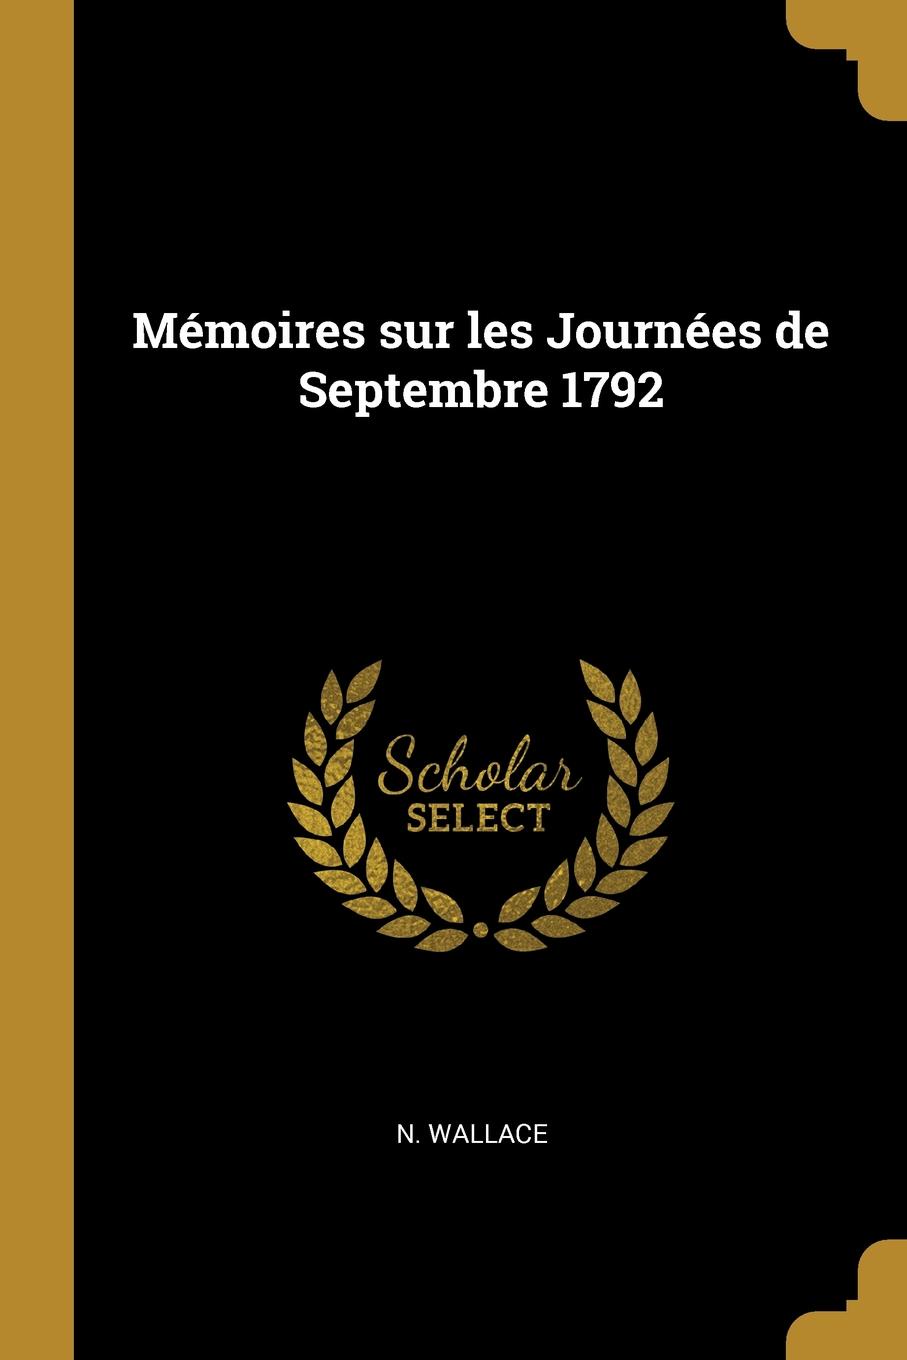 Memoires sur les Journees de Septembre 1792